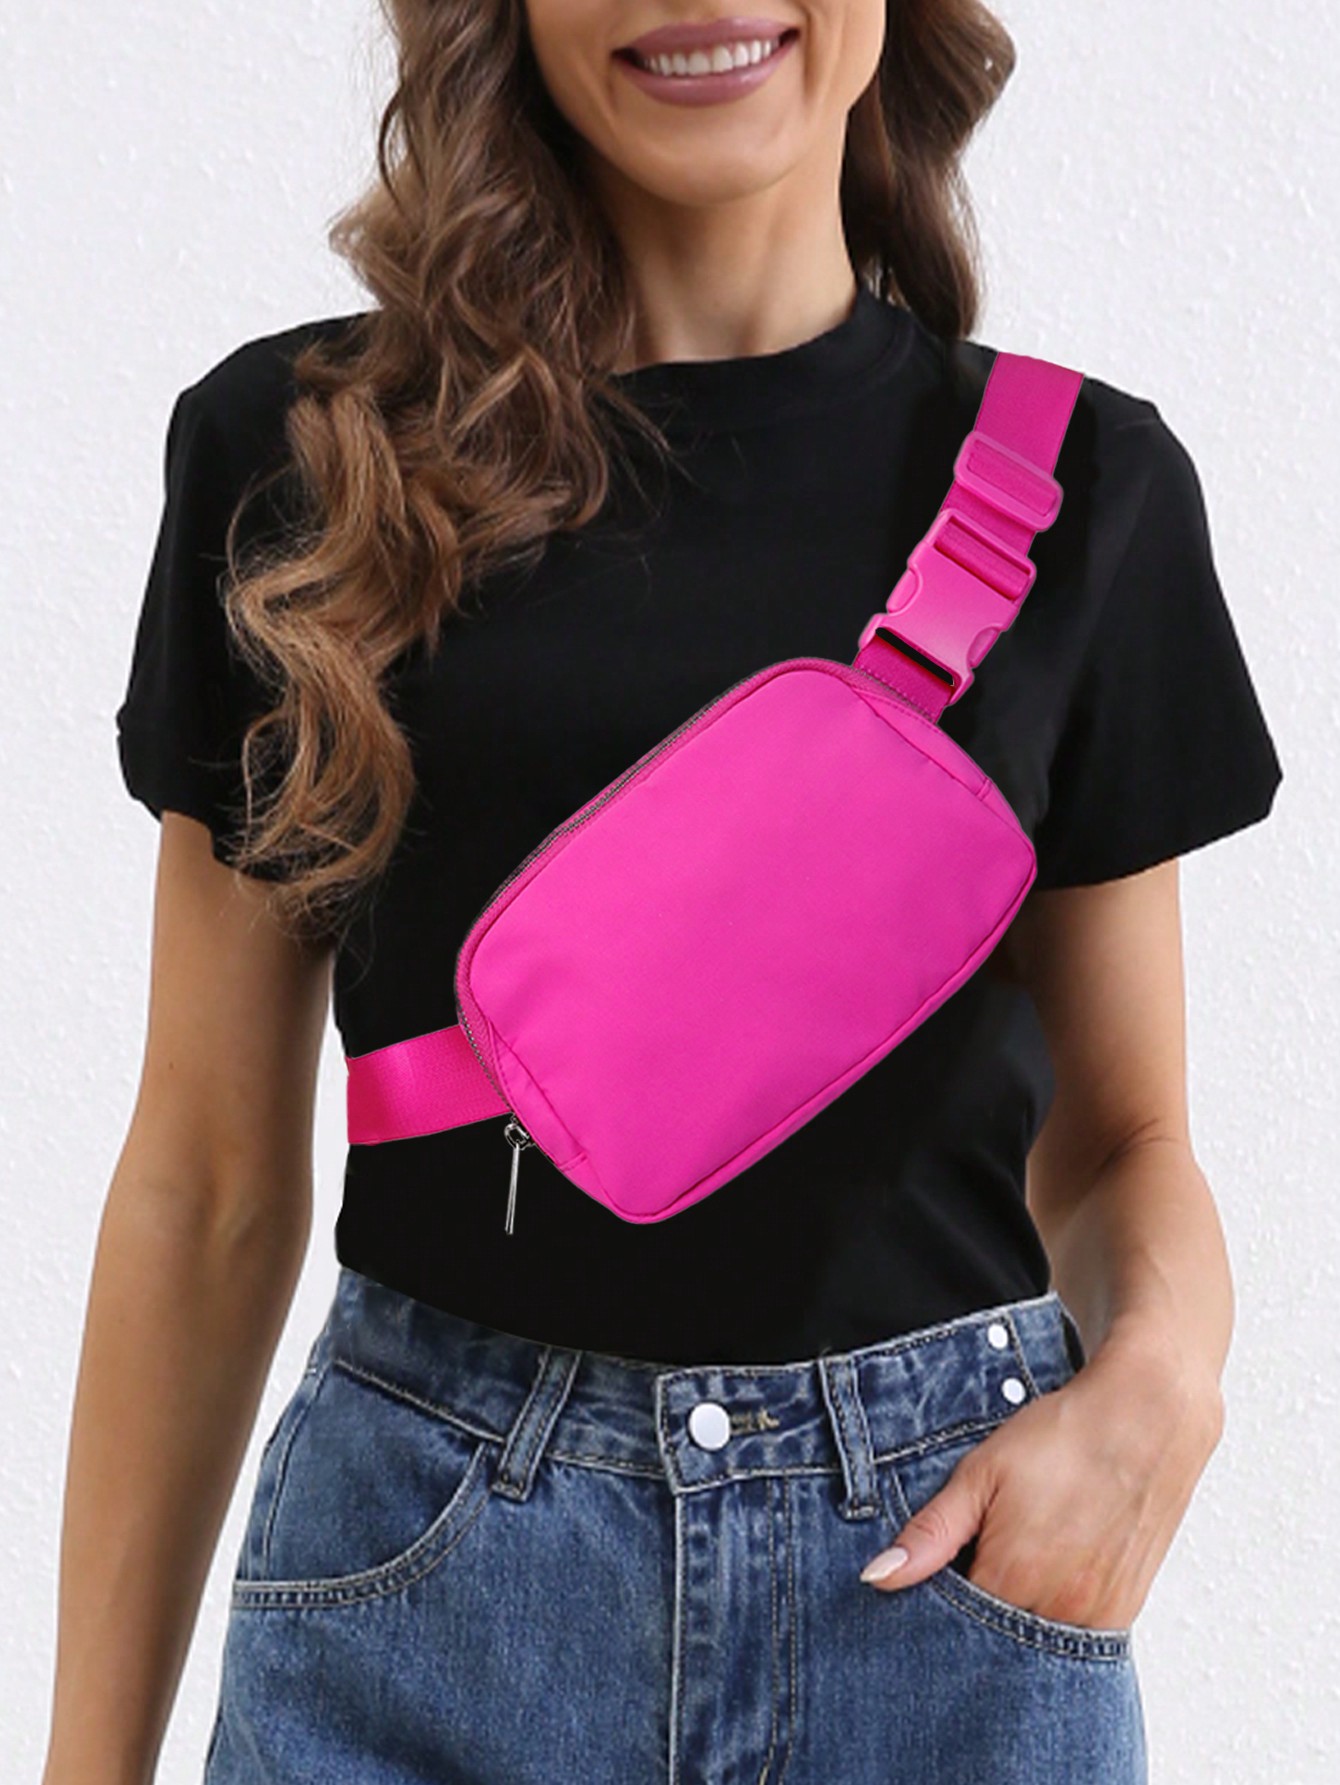 Маленькая поясная сумка Неоново-розовая вечерняя сумка в стиле фанк с рюшами для женщин, ярко-розовый